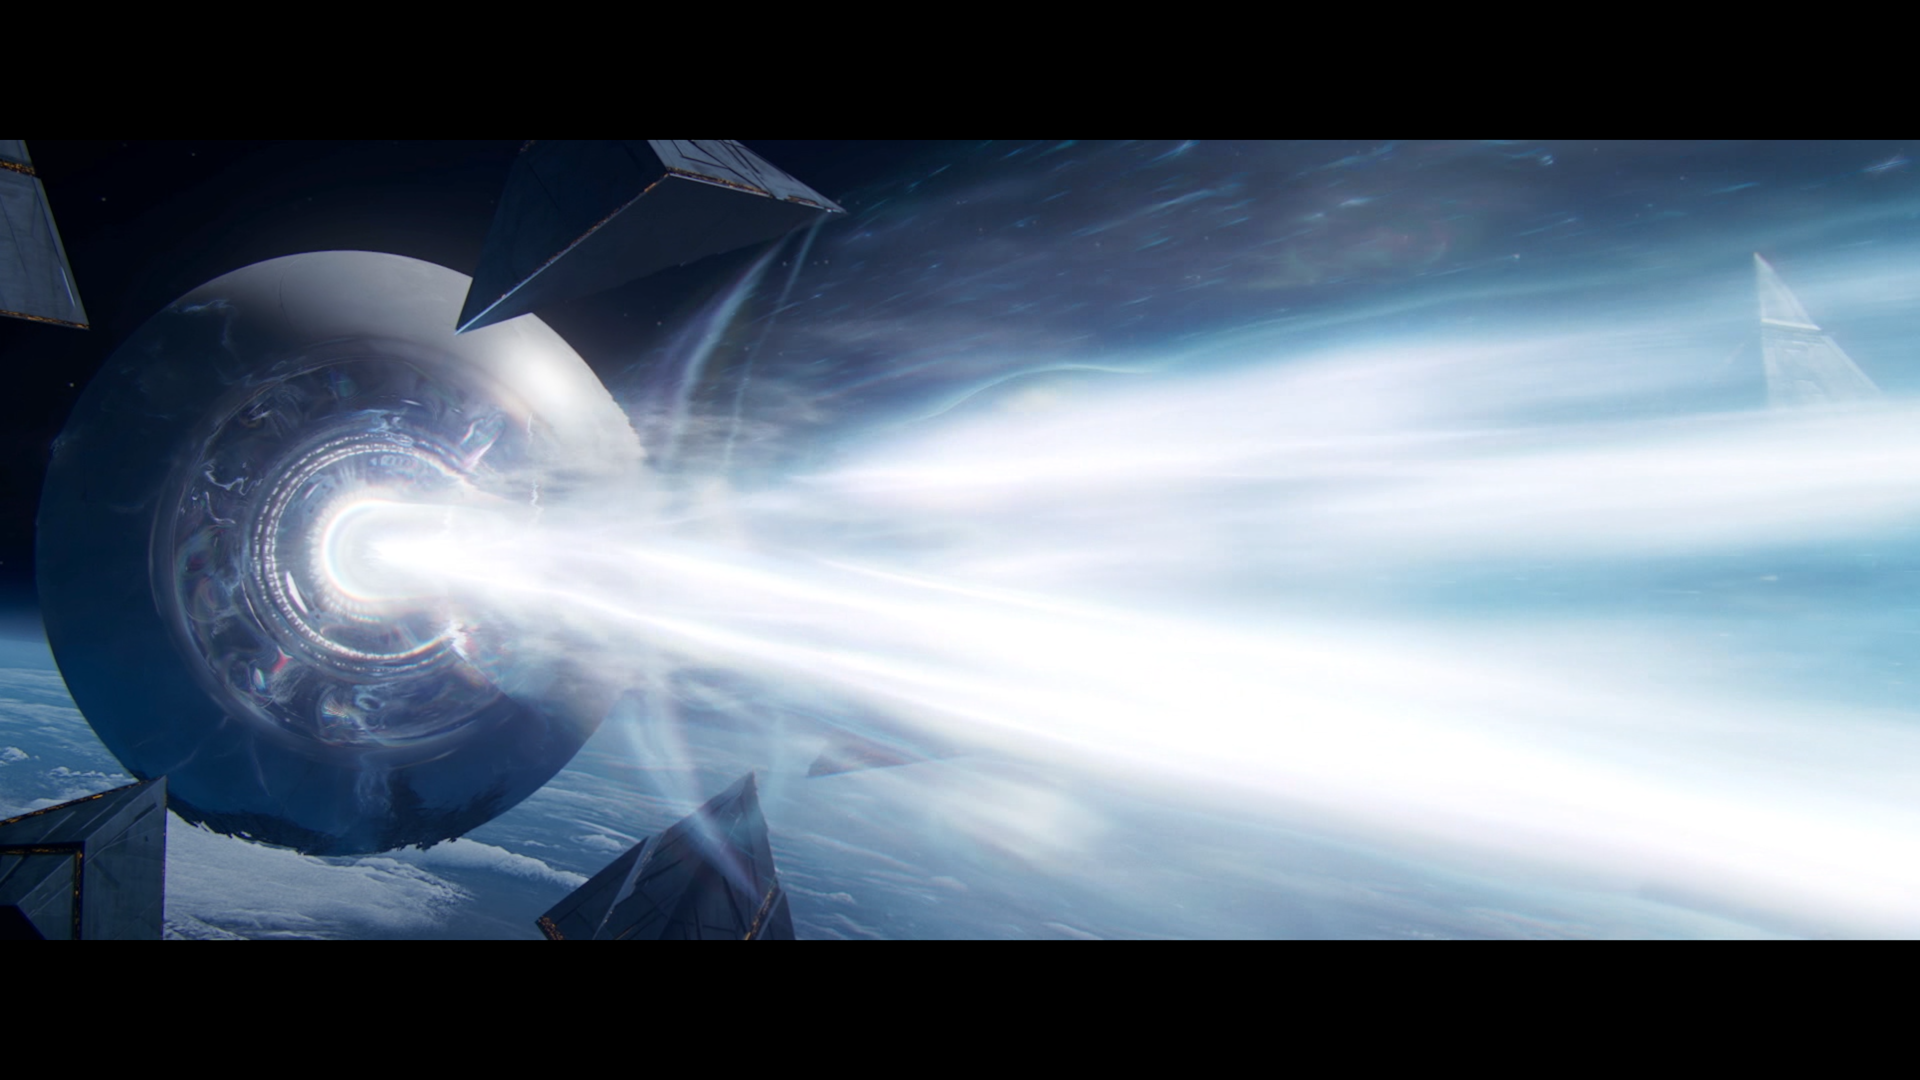 Destiny 2 Lightfall - a cutscene where the traveler fires a beam like the Death Star